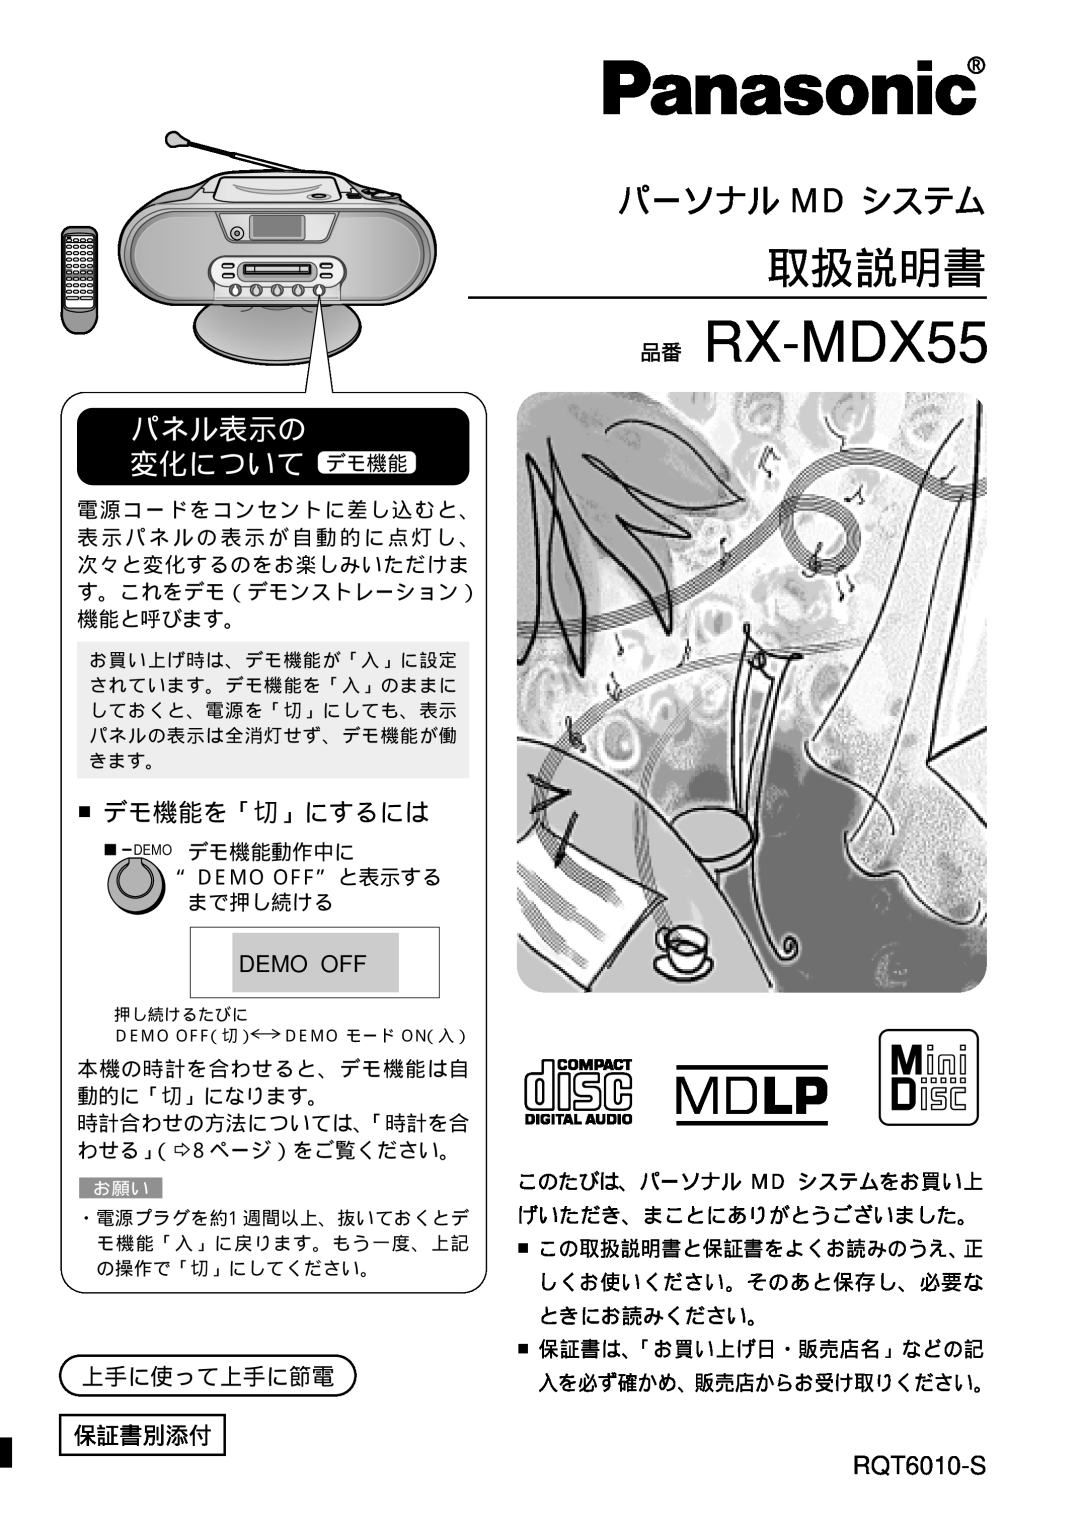 Panasonic manual 取扱説明書, パーソナル Md システム, パネル表示の 変化について デモ機能, デモ機能を「切」にするには, RQT6010-S, 品番 RX-MDX55, Demo Off 